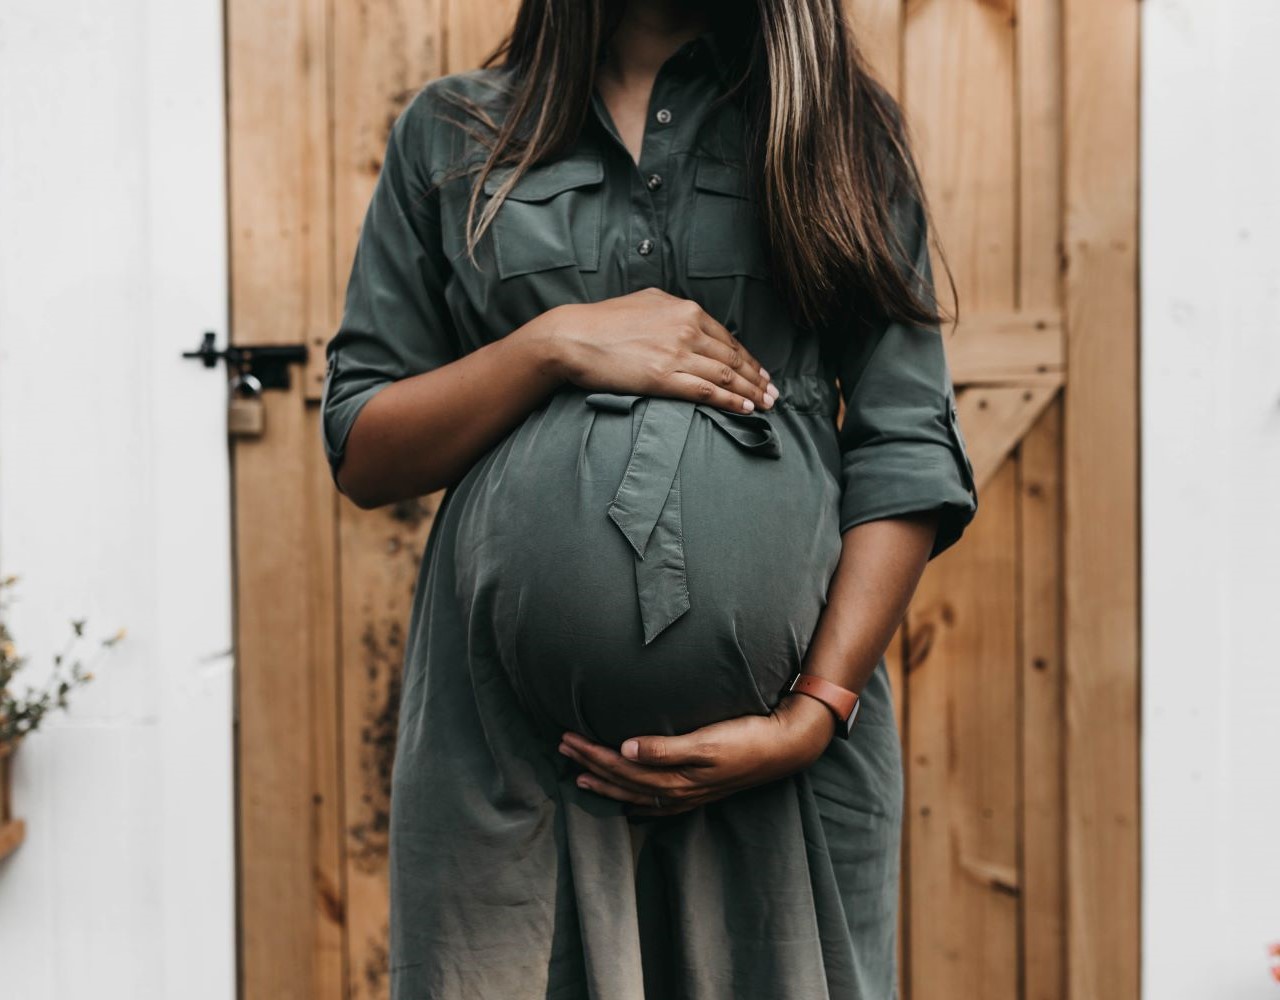 Πόσα κιλά πρέπει να πάρει μια γυναίκα κατά τη διάρκεια της εγκυμοσύνης